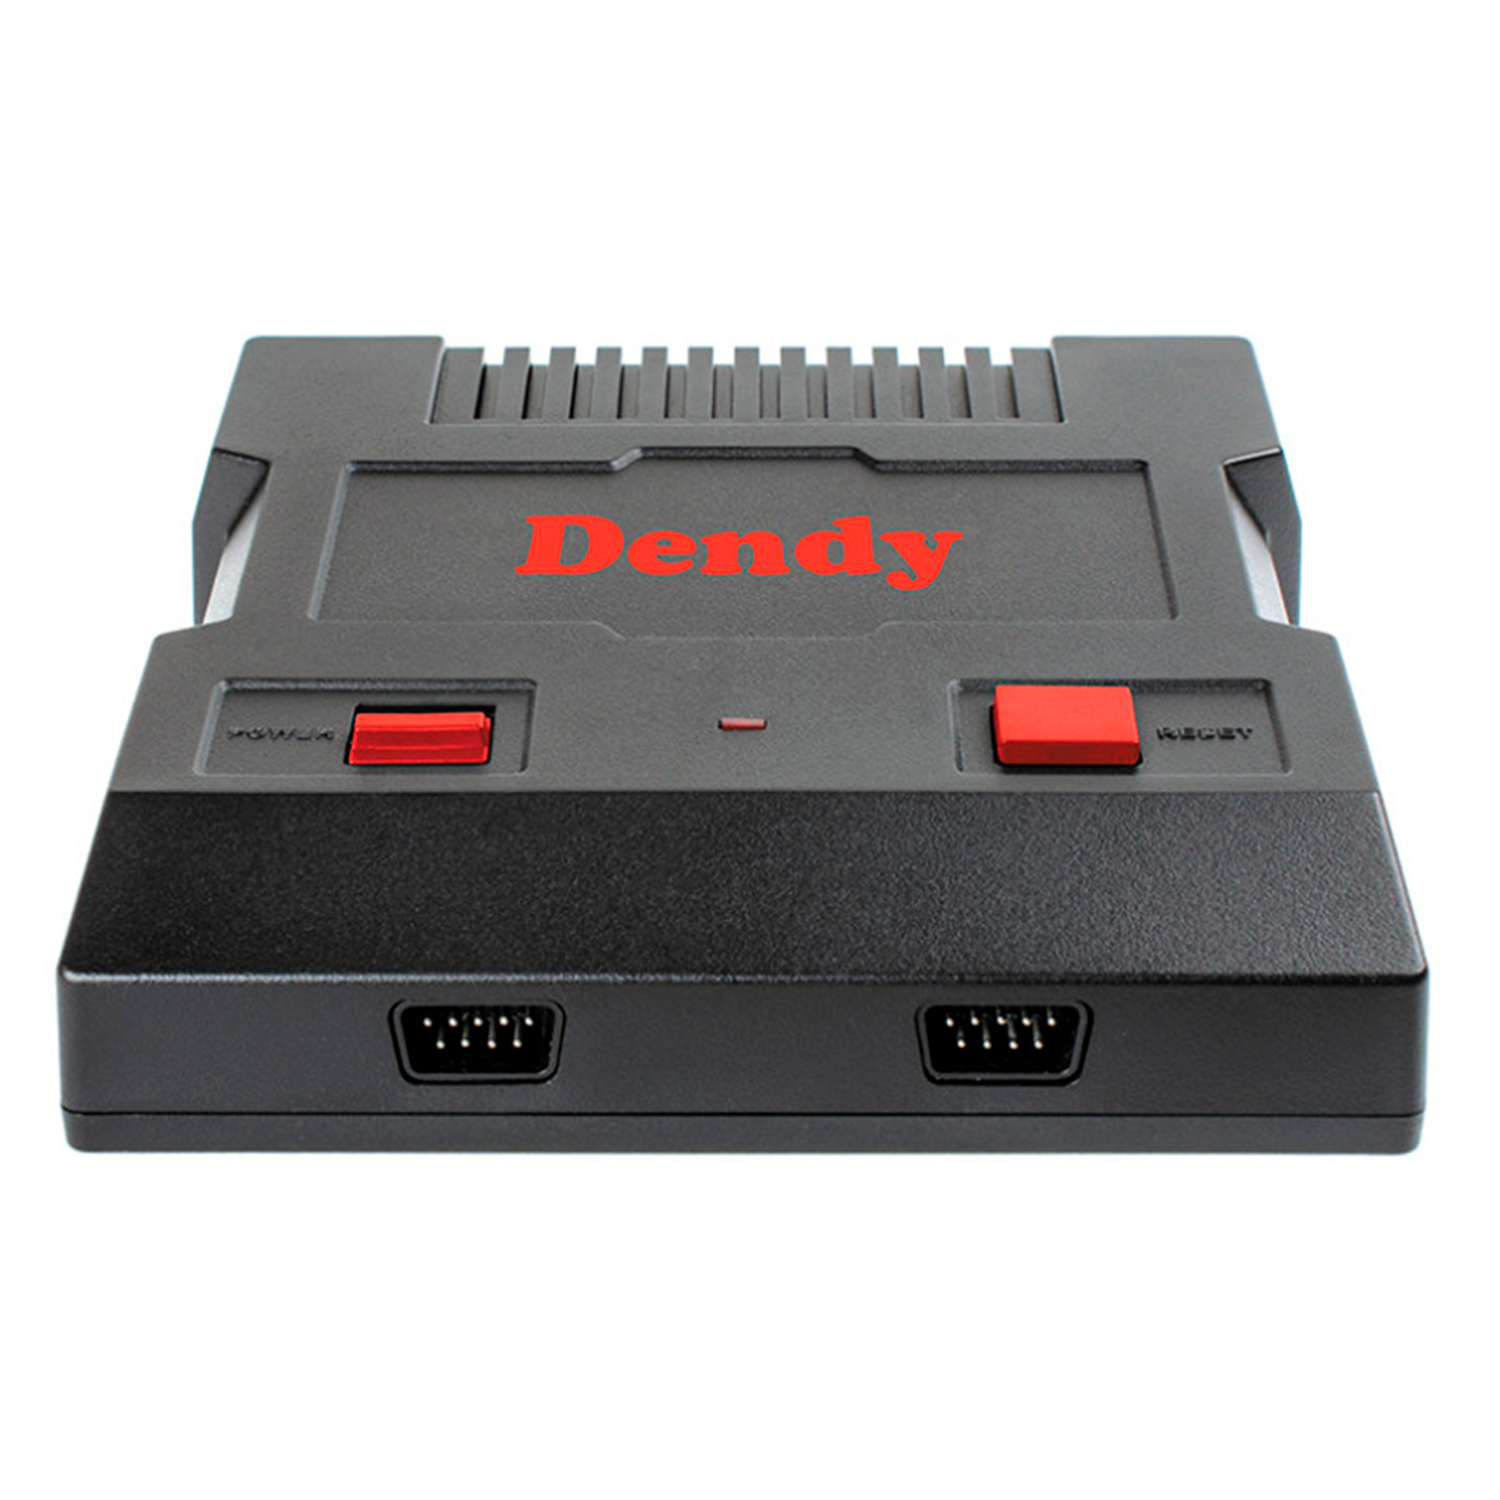 Игровая приставка Dendy Achive 640 игр и световой пистолет чёрная - фото 10